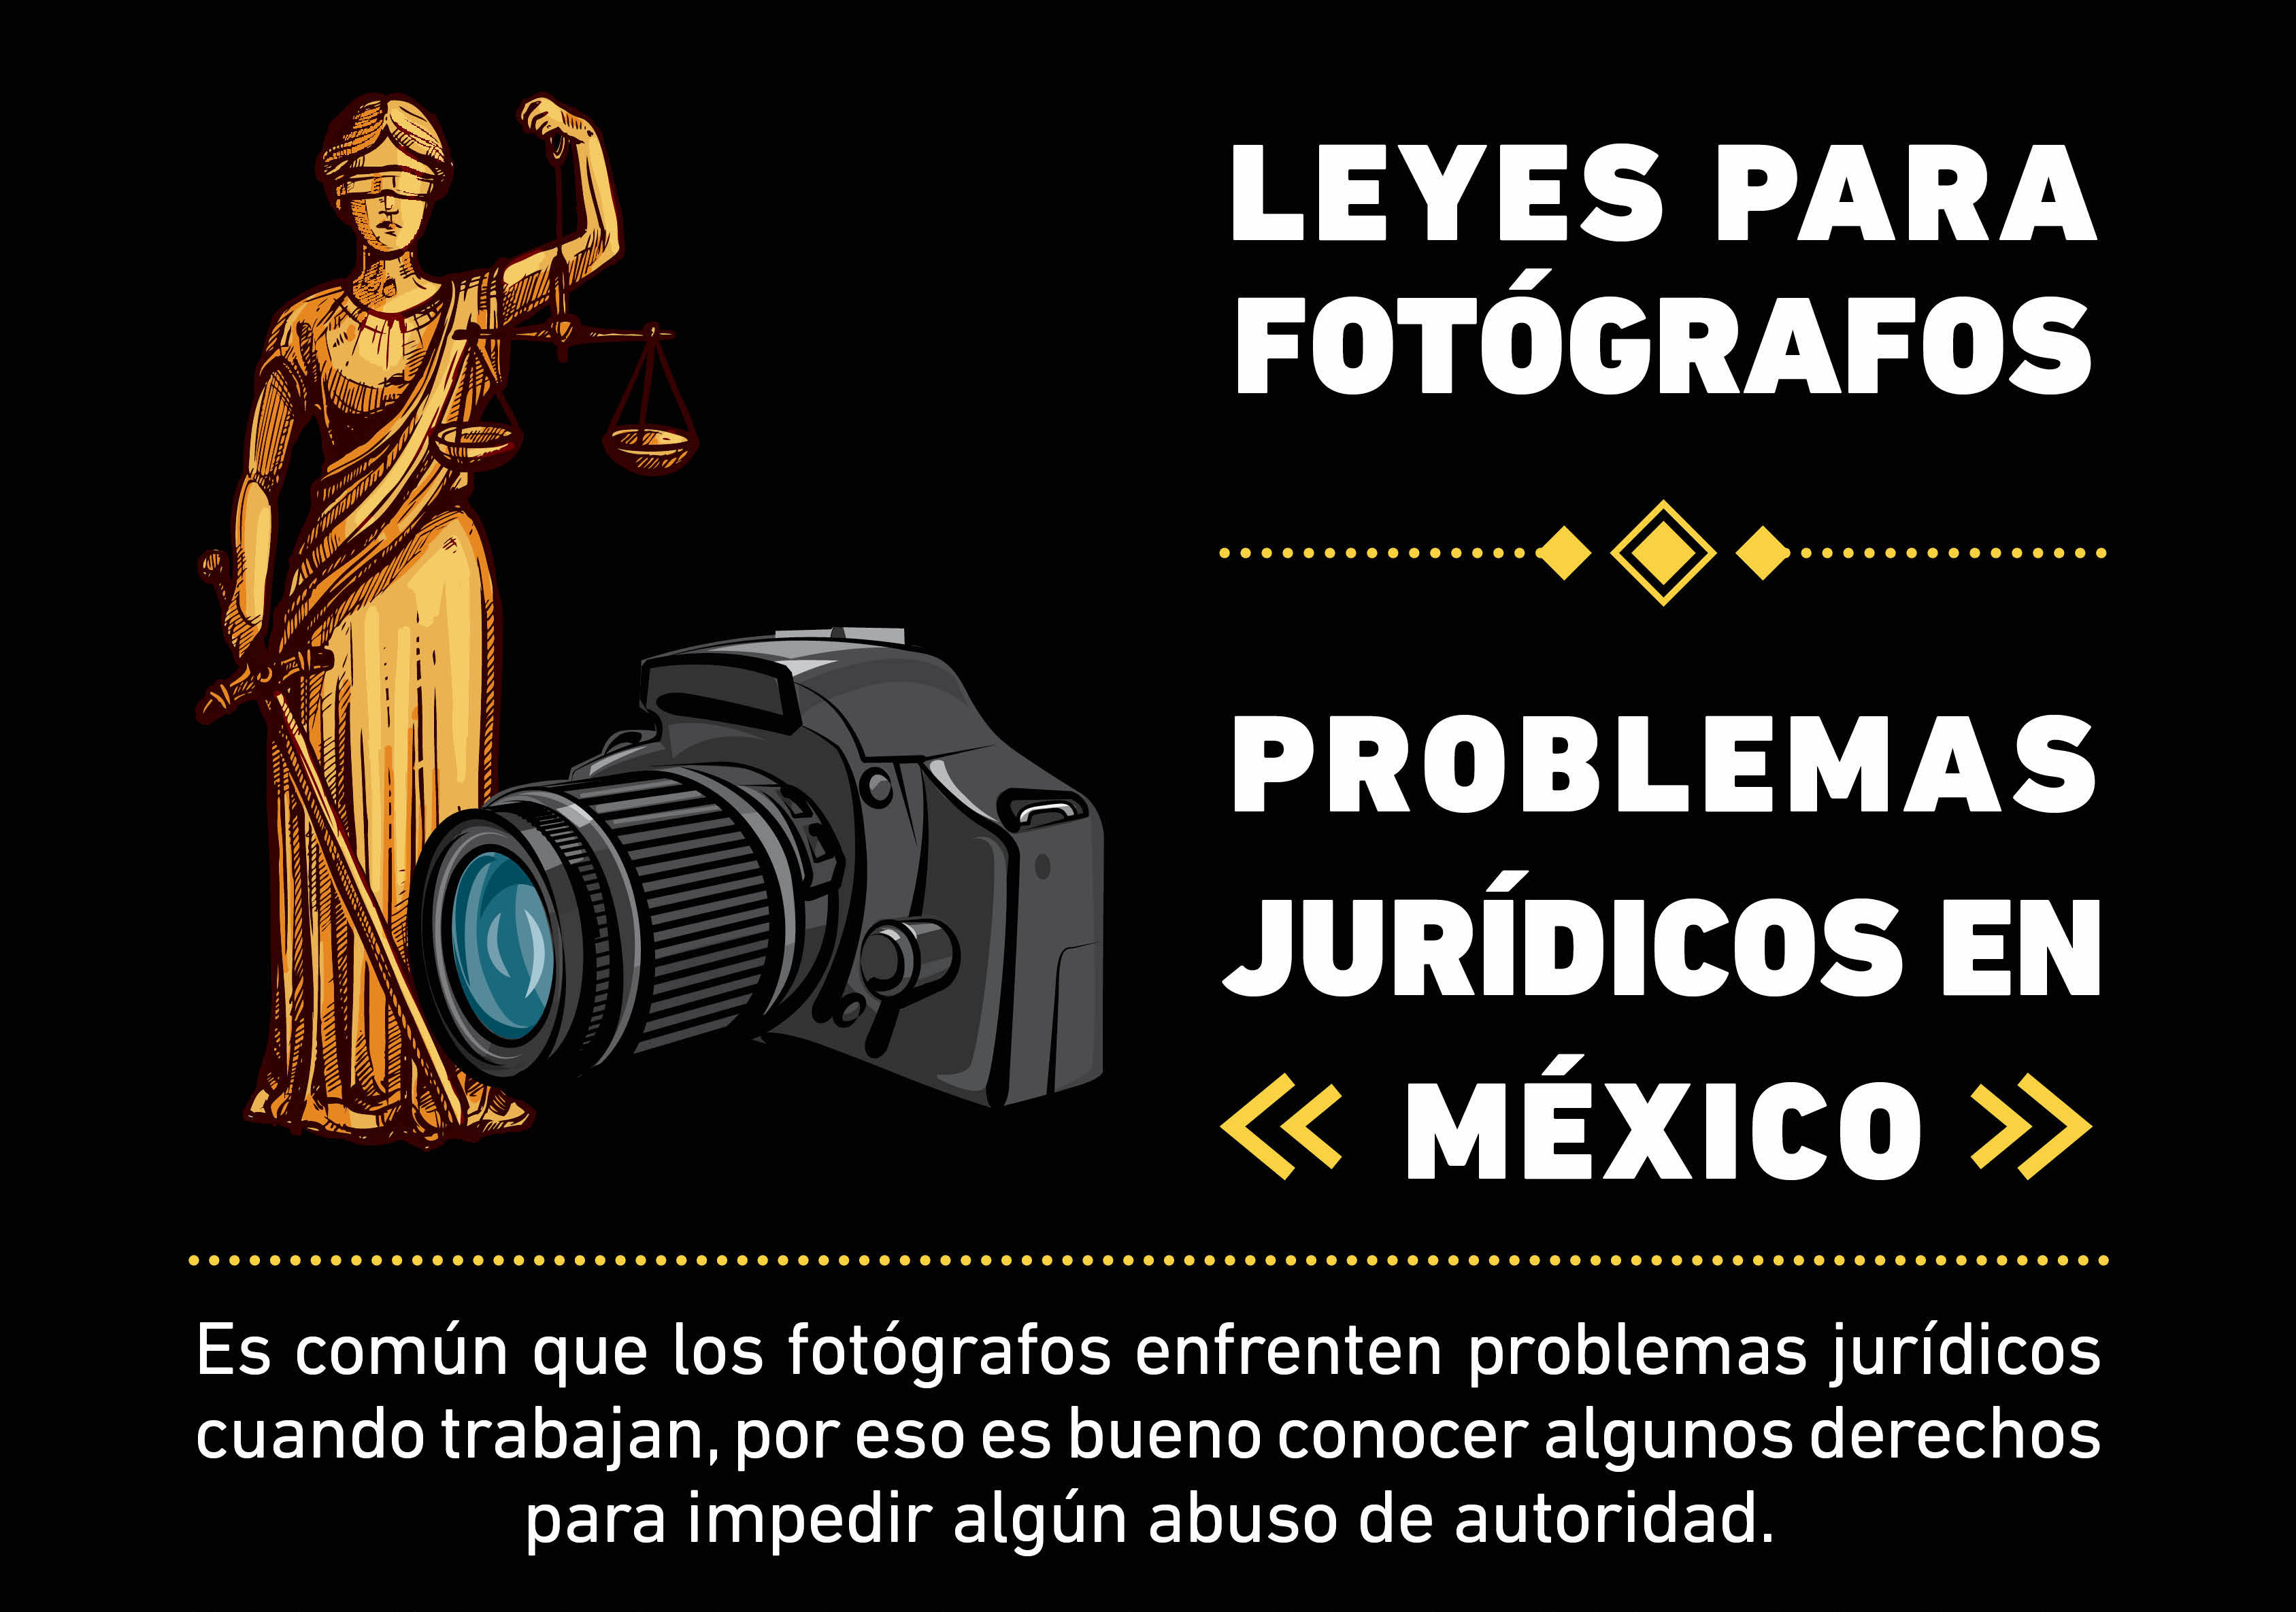 Conocer un poco de Leyes para Fotógrafos ayuda a enfrentar los problemas jurídicos que se ocasionan cuando trabajan y así evitar abusos.